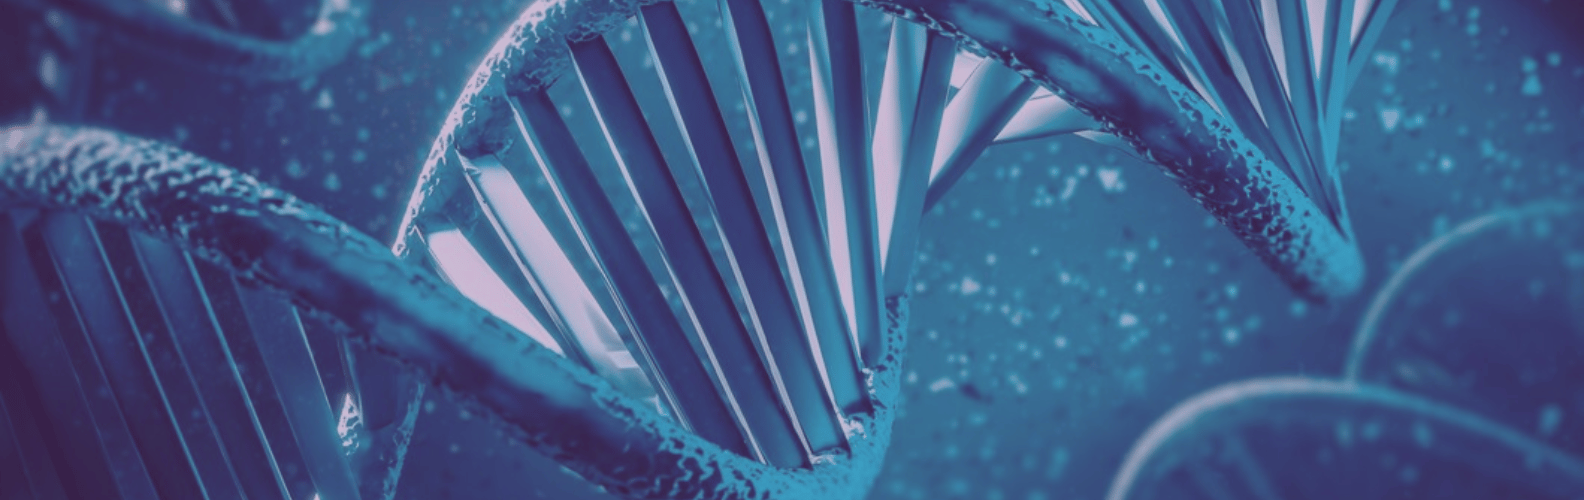 Pruebas diagnósticas de fertilidad para Hombre-Fragmentación del ADN espermático